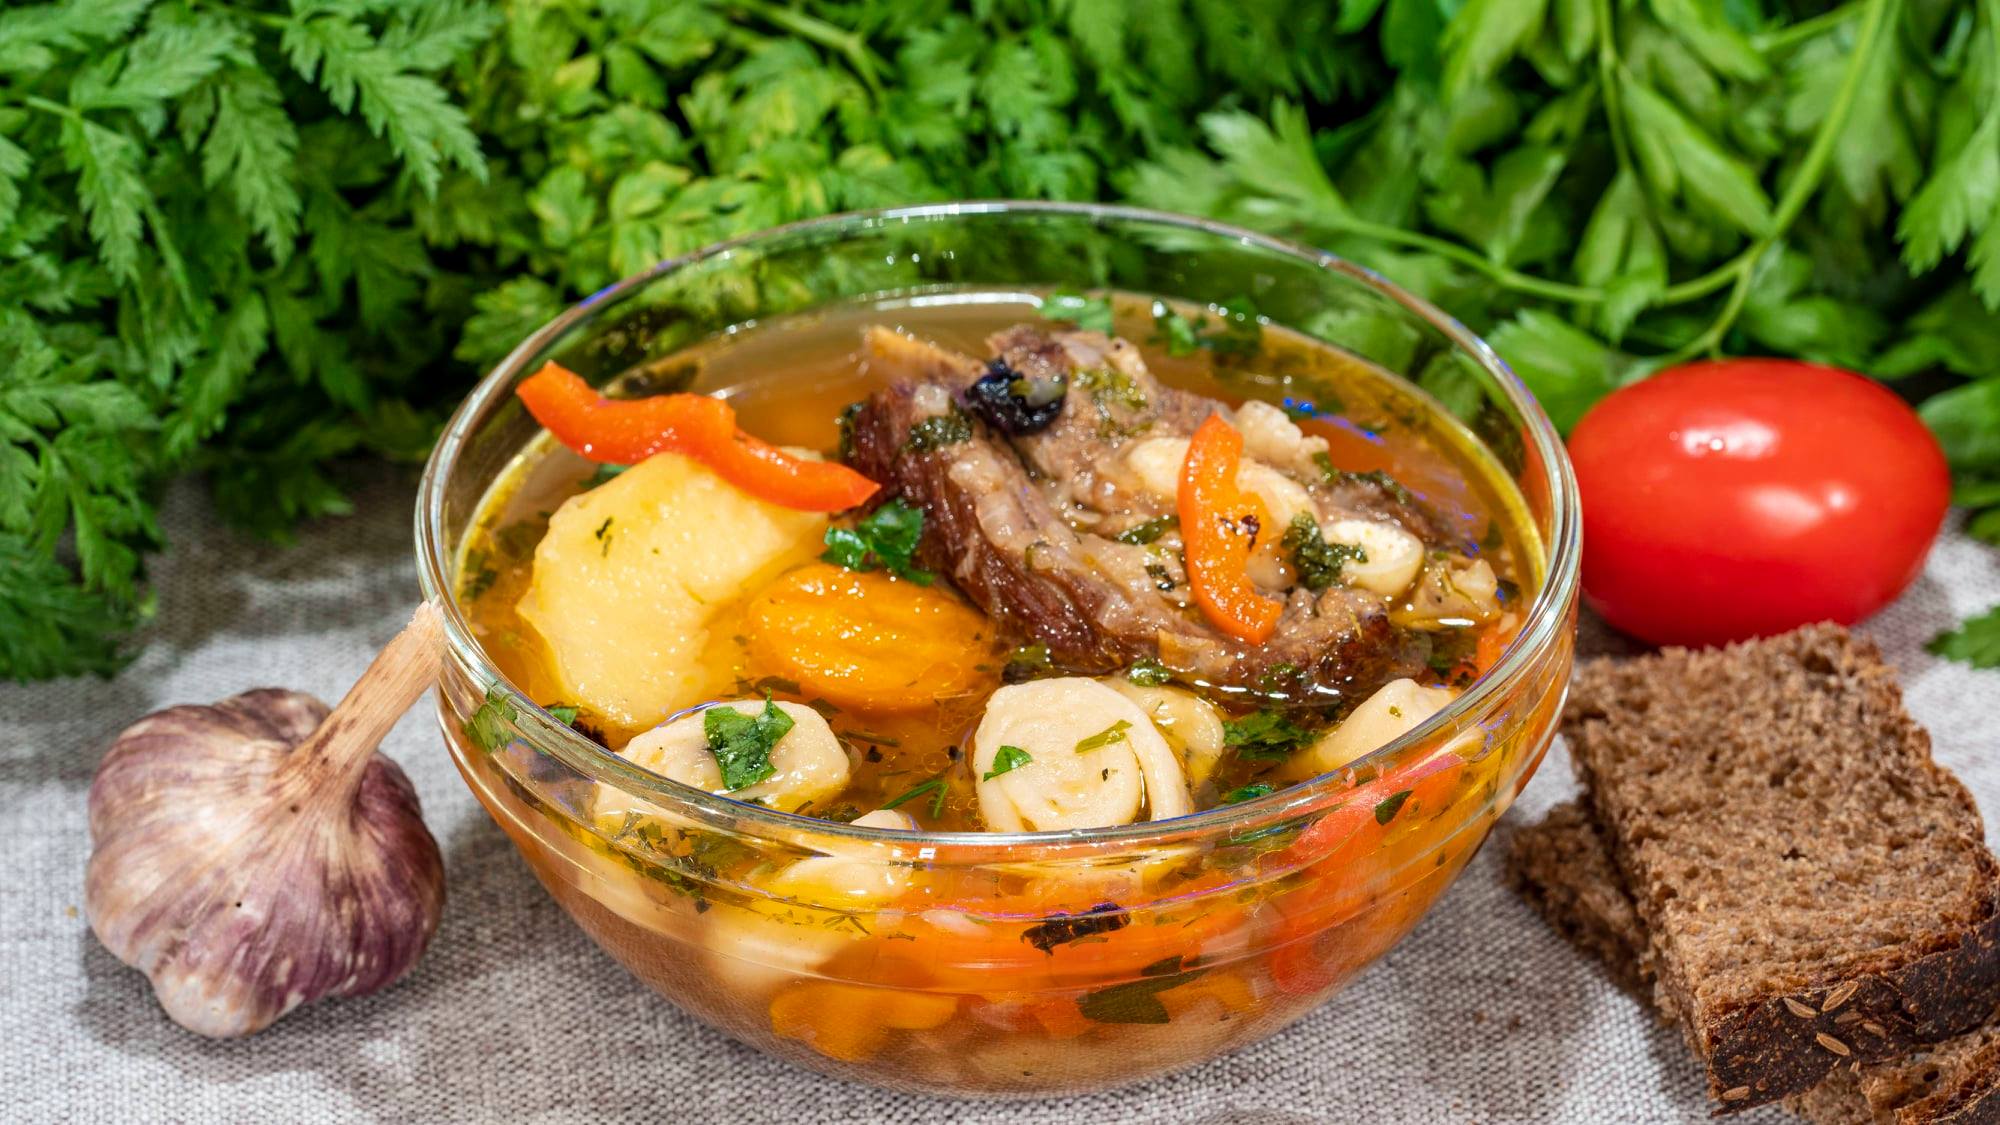 Суп из говядины с овощами и домашними клецками